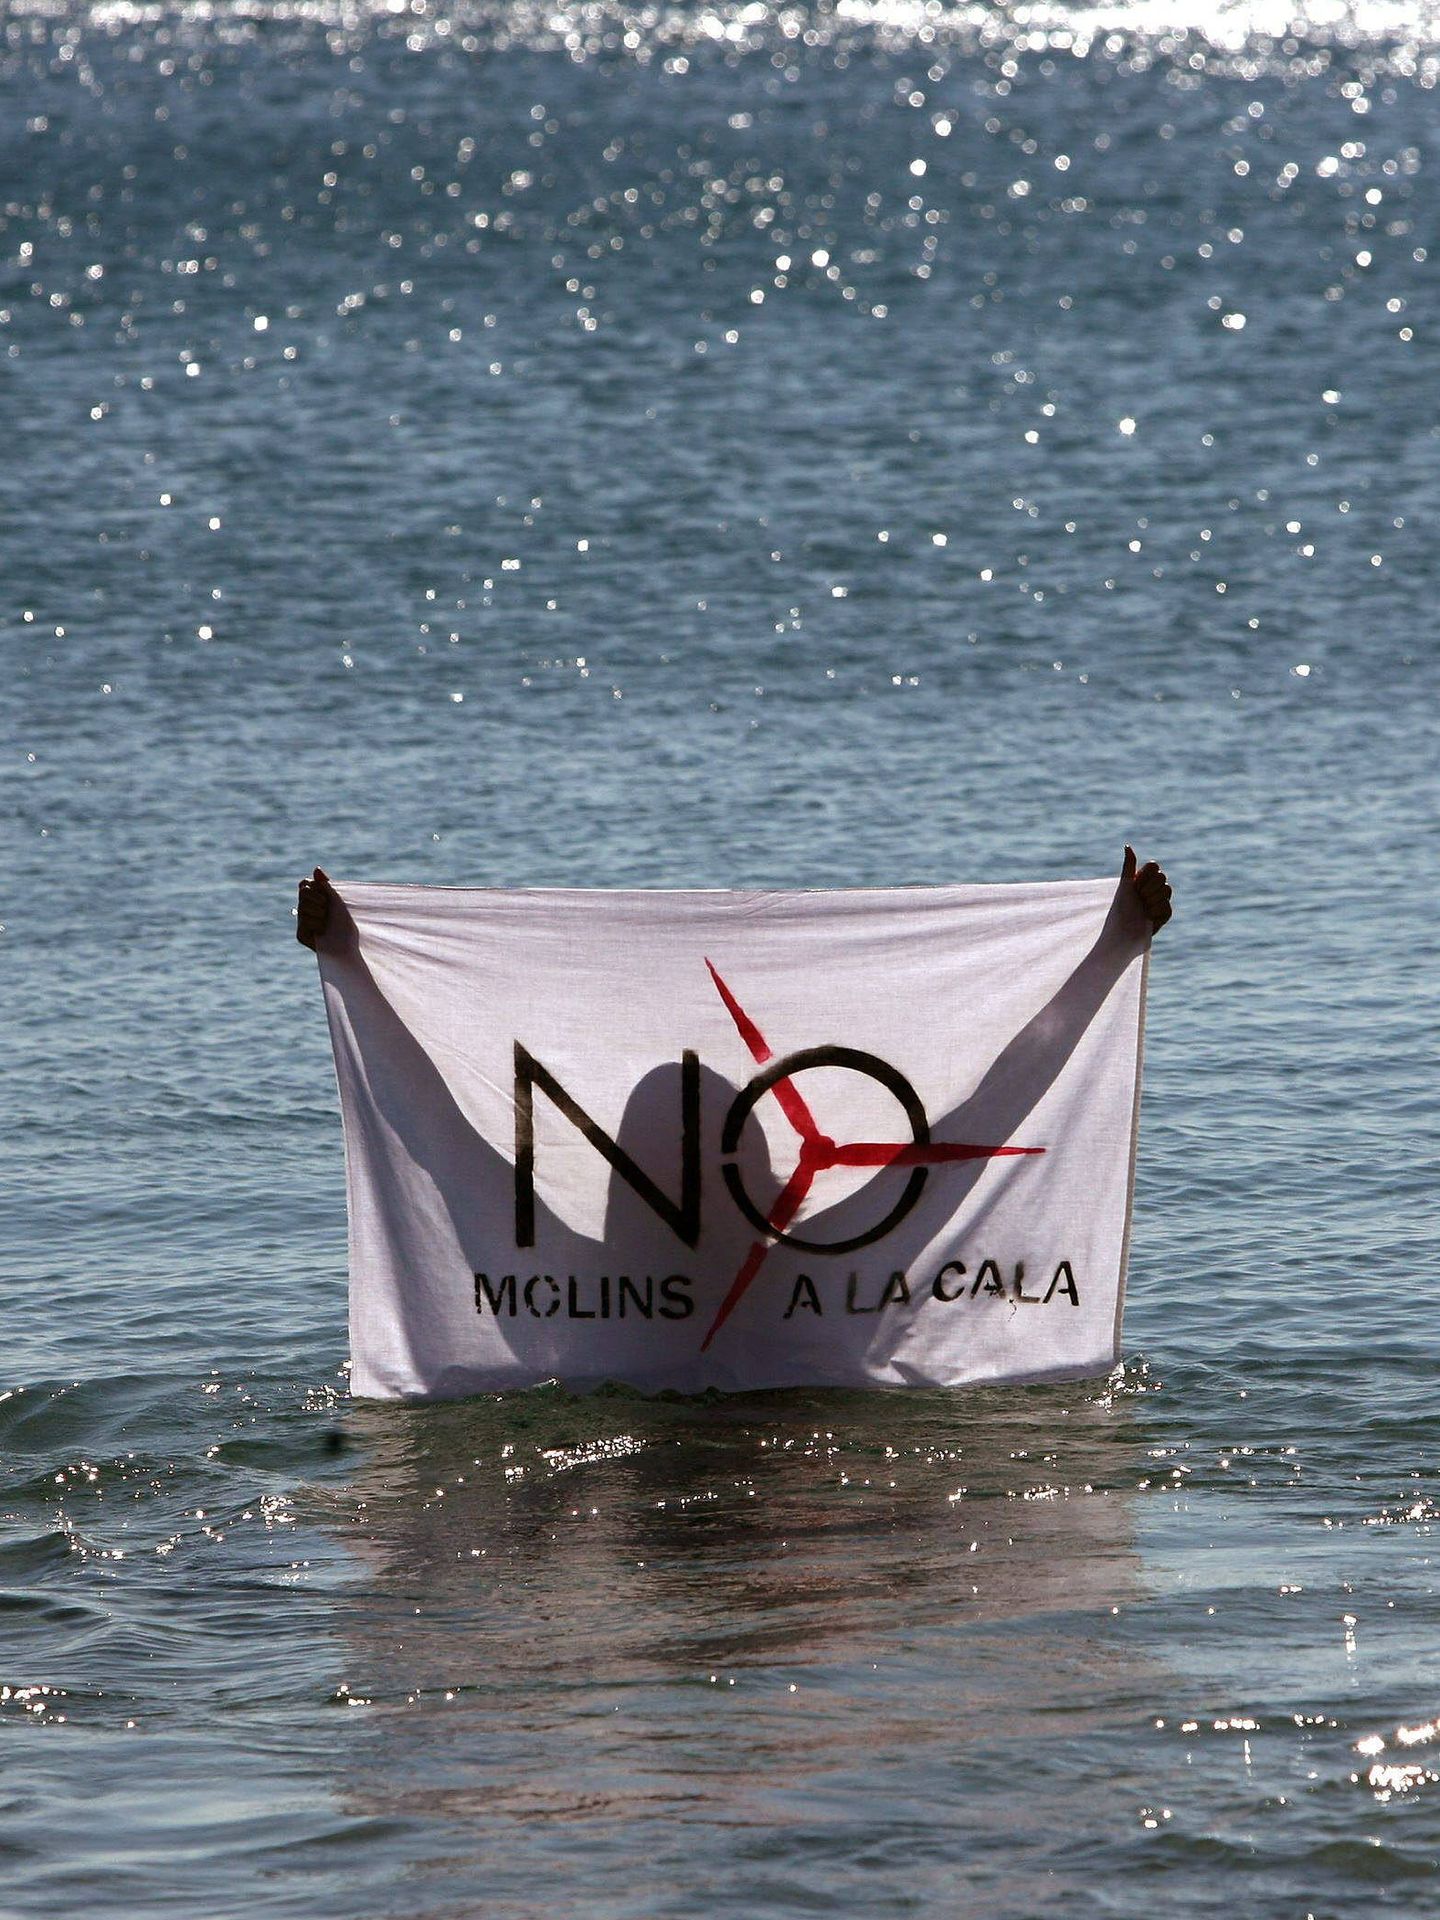 Protesta contra la eólica marina en L'Ametlla de Mar, Tarragona. (EFE/J. Sellart)